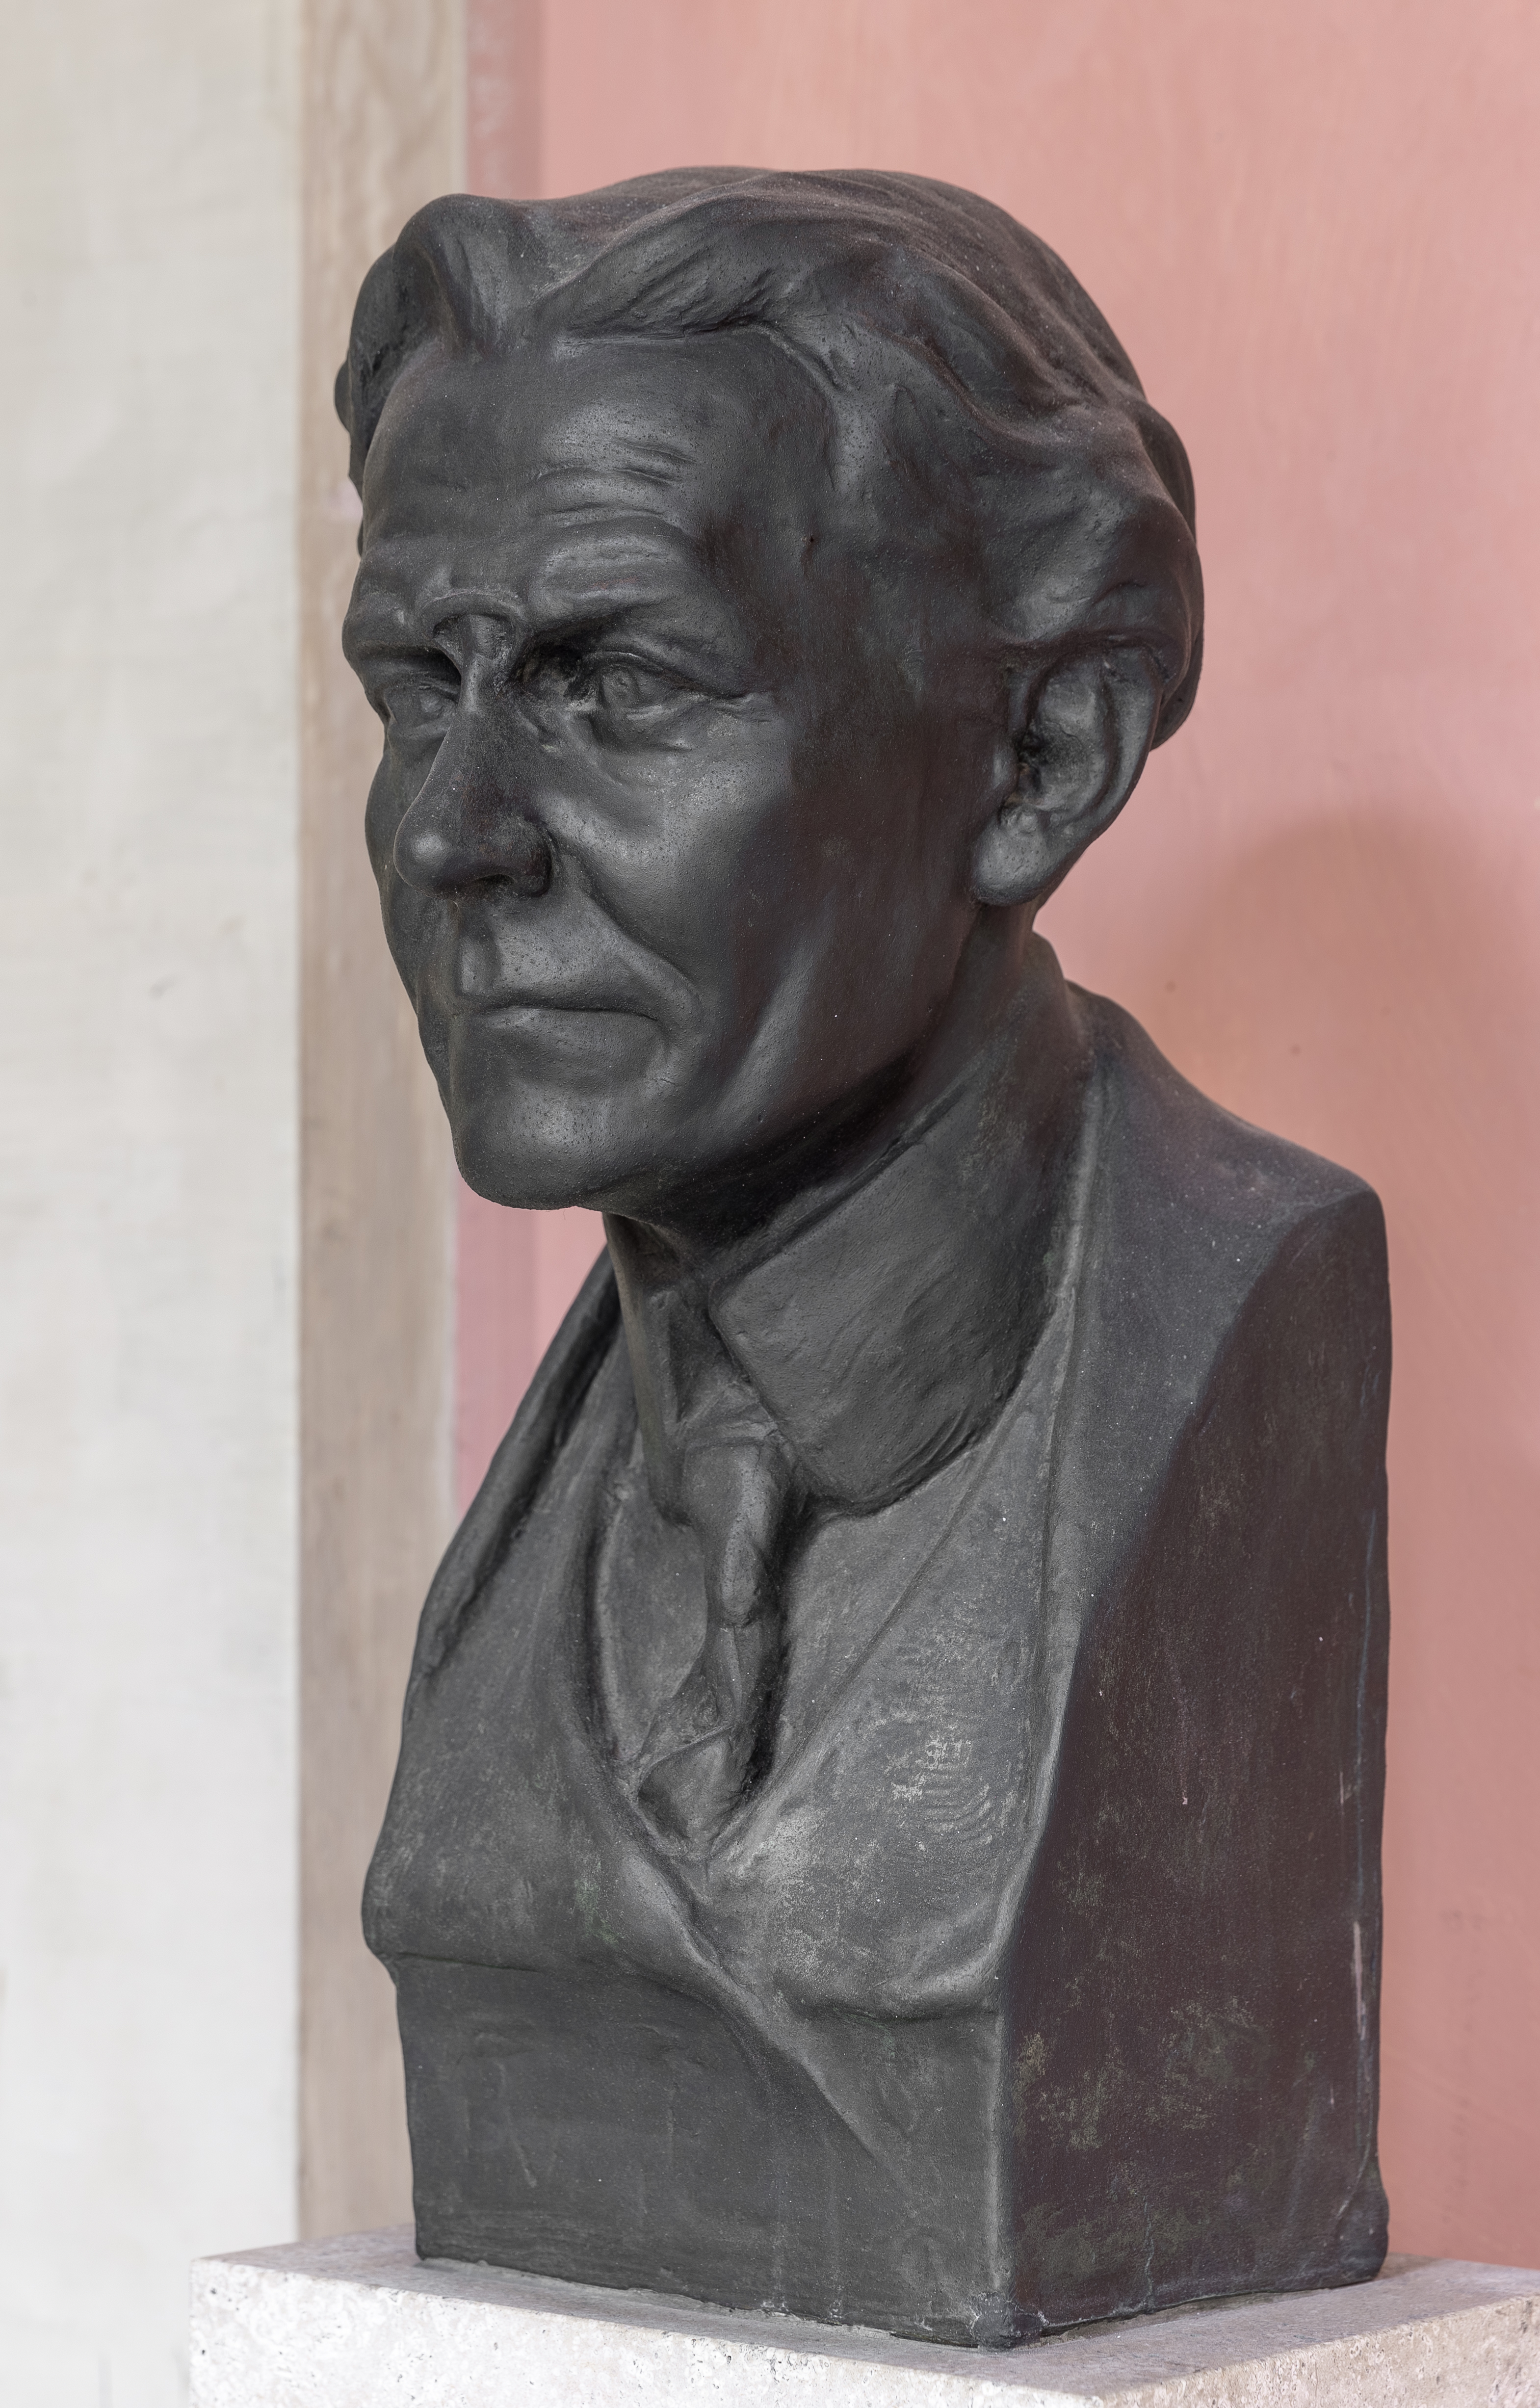 Julius von Schlosser (1866-1938), Mr. 94 bust (bronce) in the Arkadenhof of the University of Vienna 2394-HDR